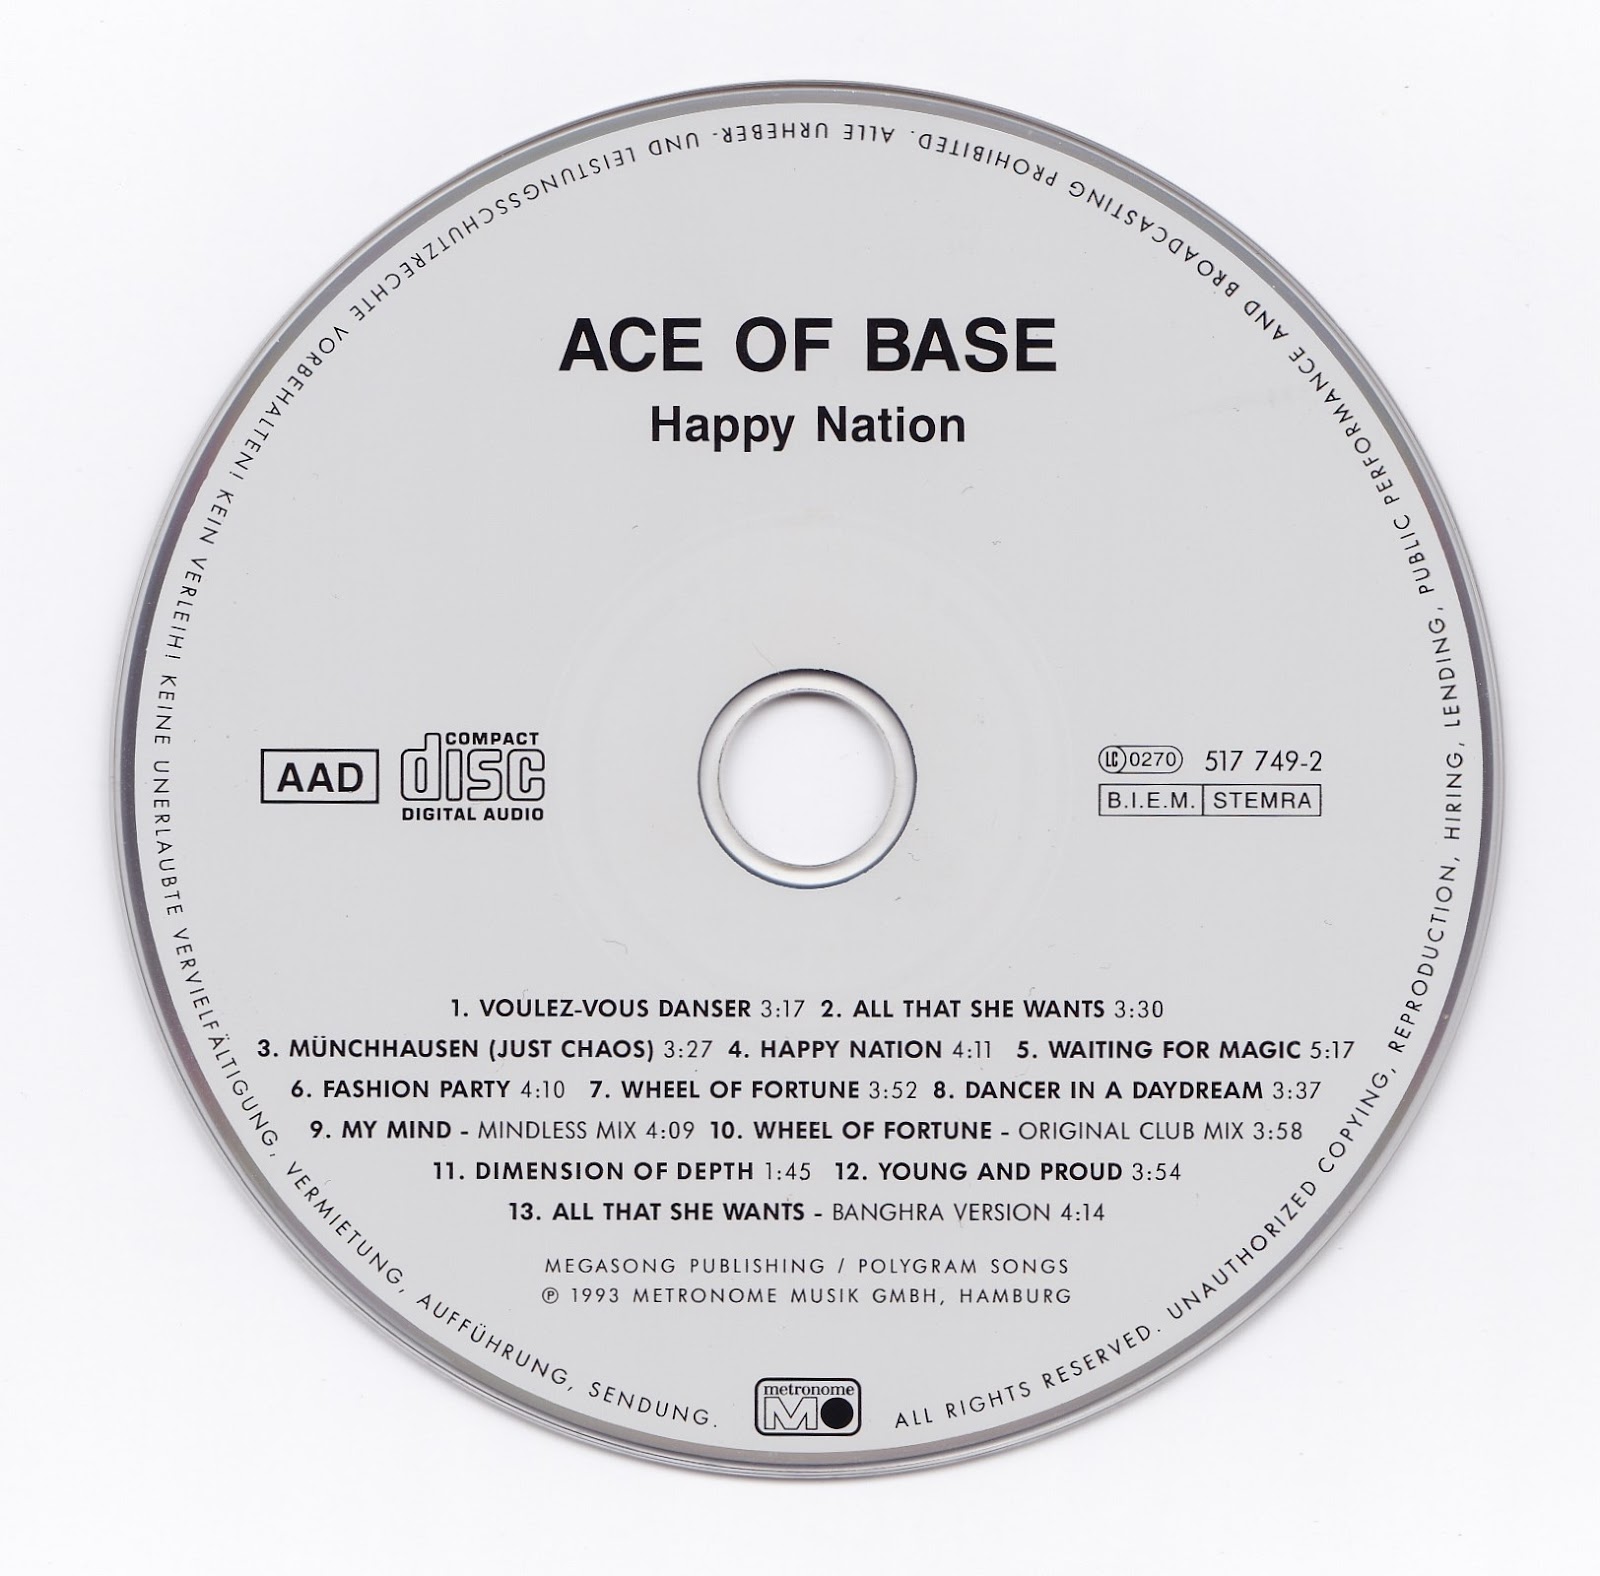 Happy nation fred. Ace of Base 1992. Ace of Base Happy Nation. Ace of Base 1993 Happy Nation. Young and proud Ace of Base.